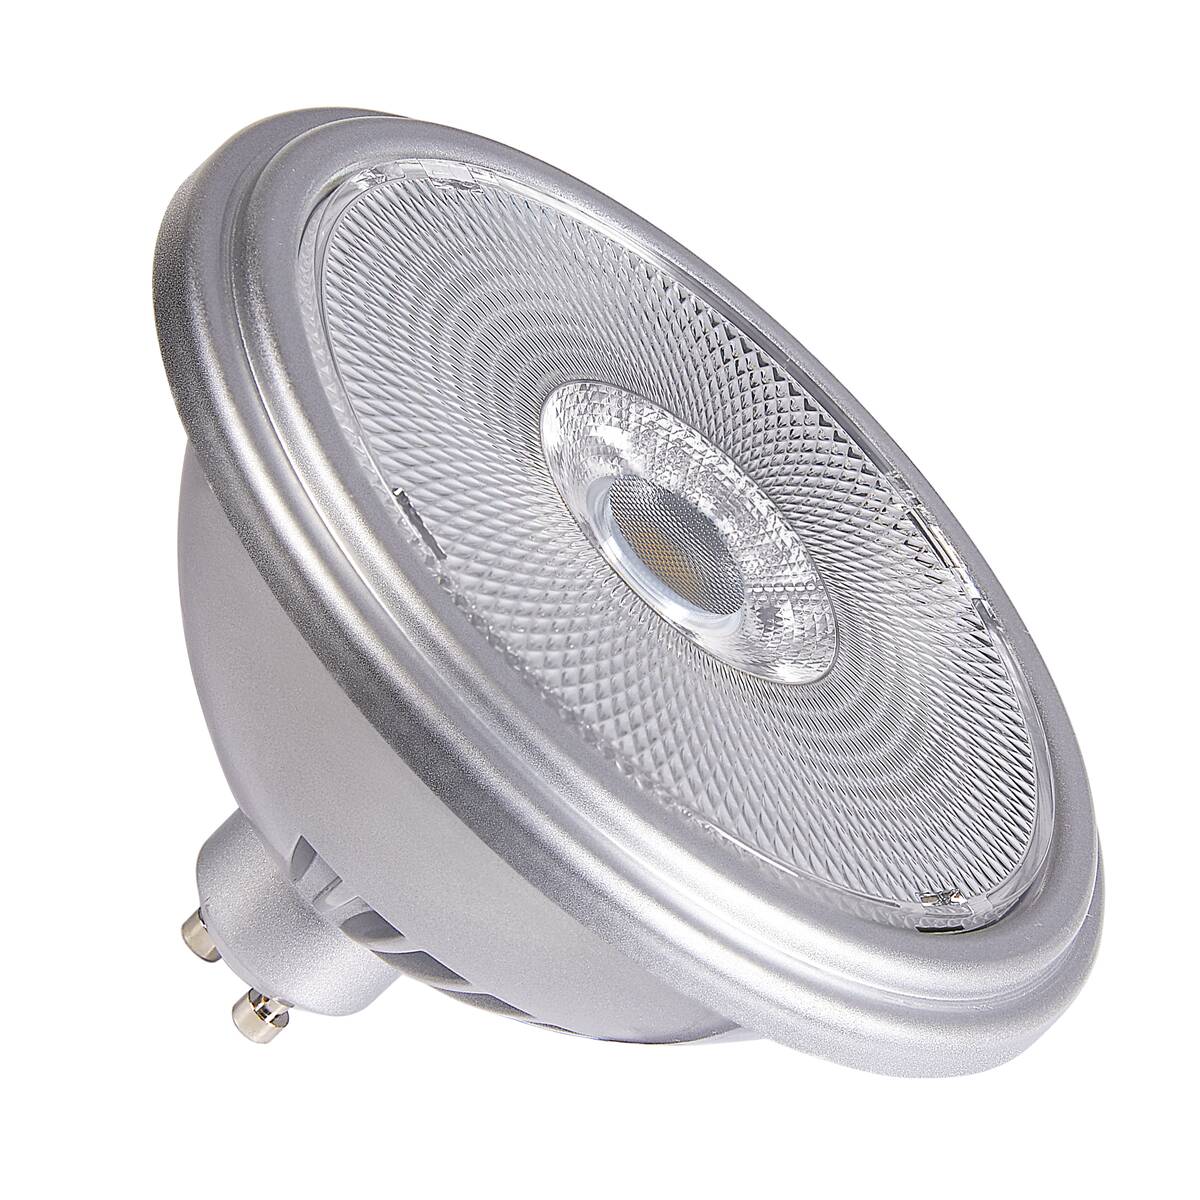 SLV - Source LED QPAR51, blanc, GU10, 2700K (1005076)